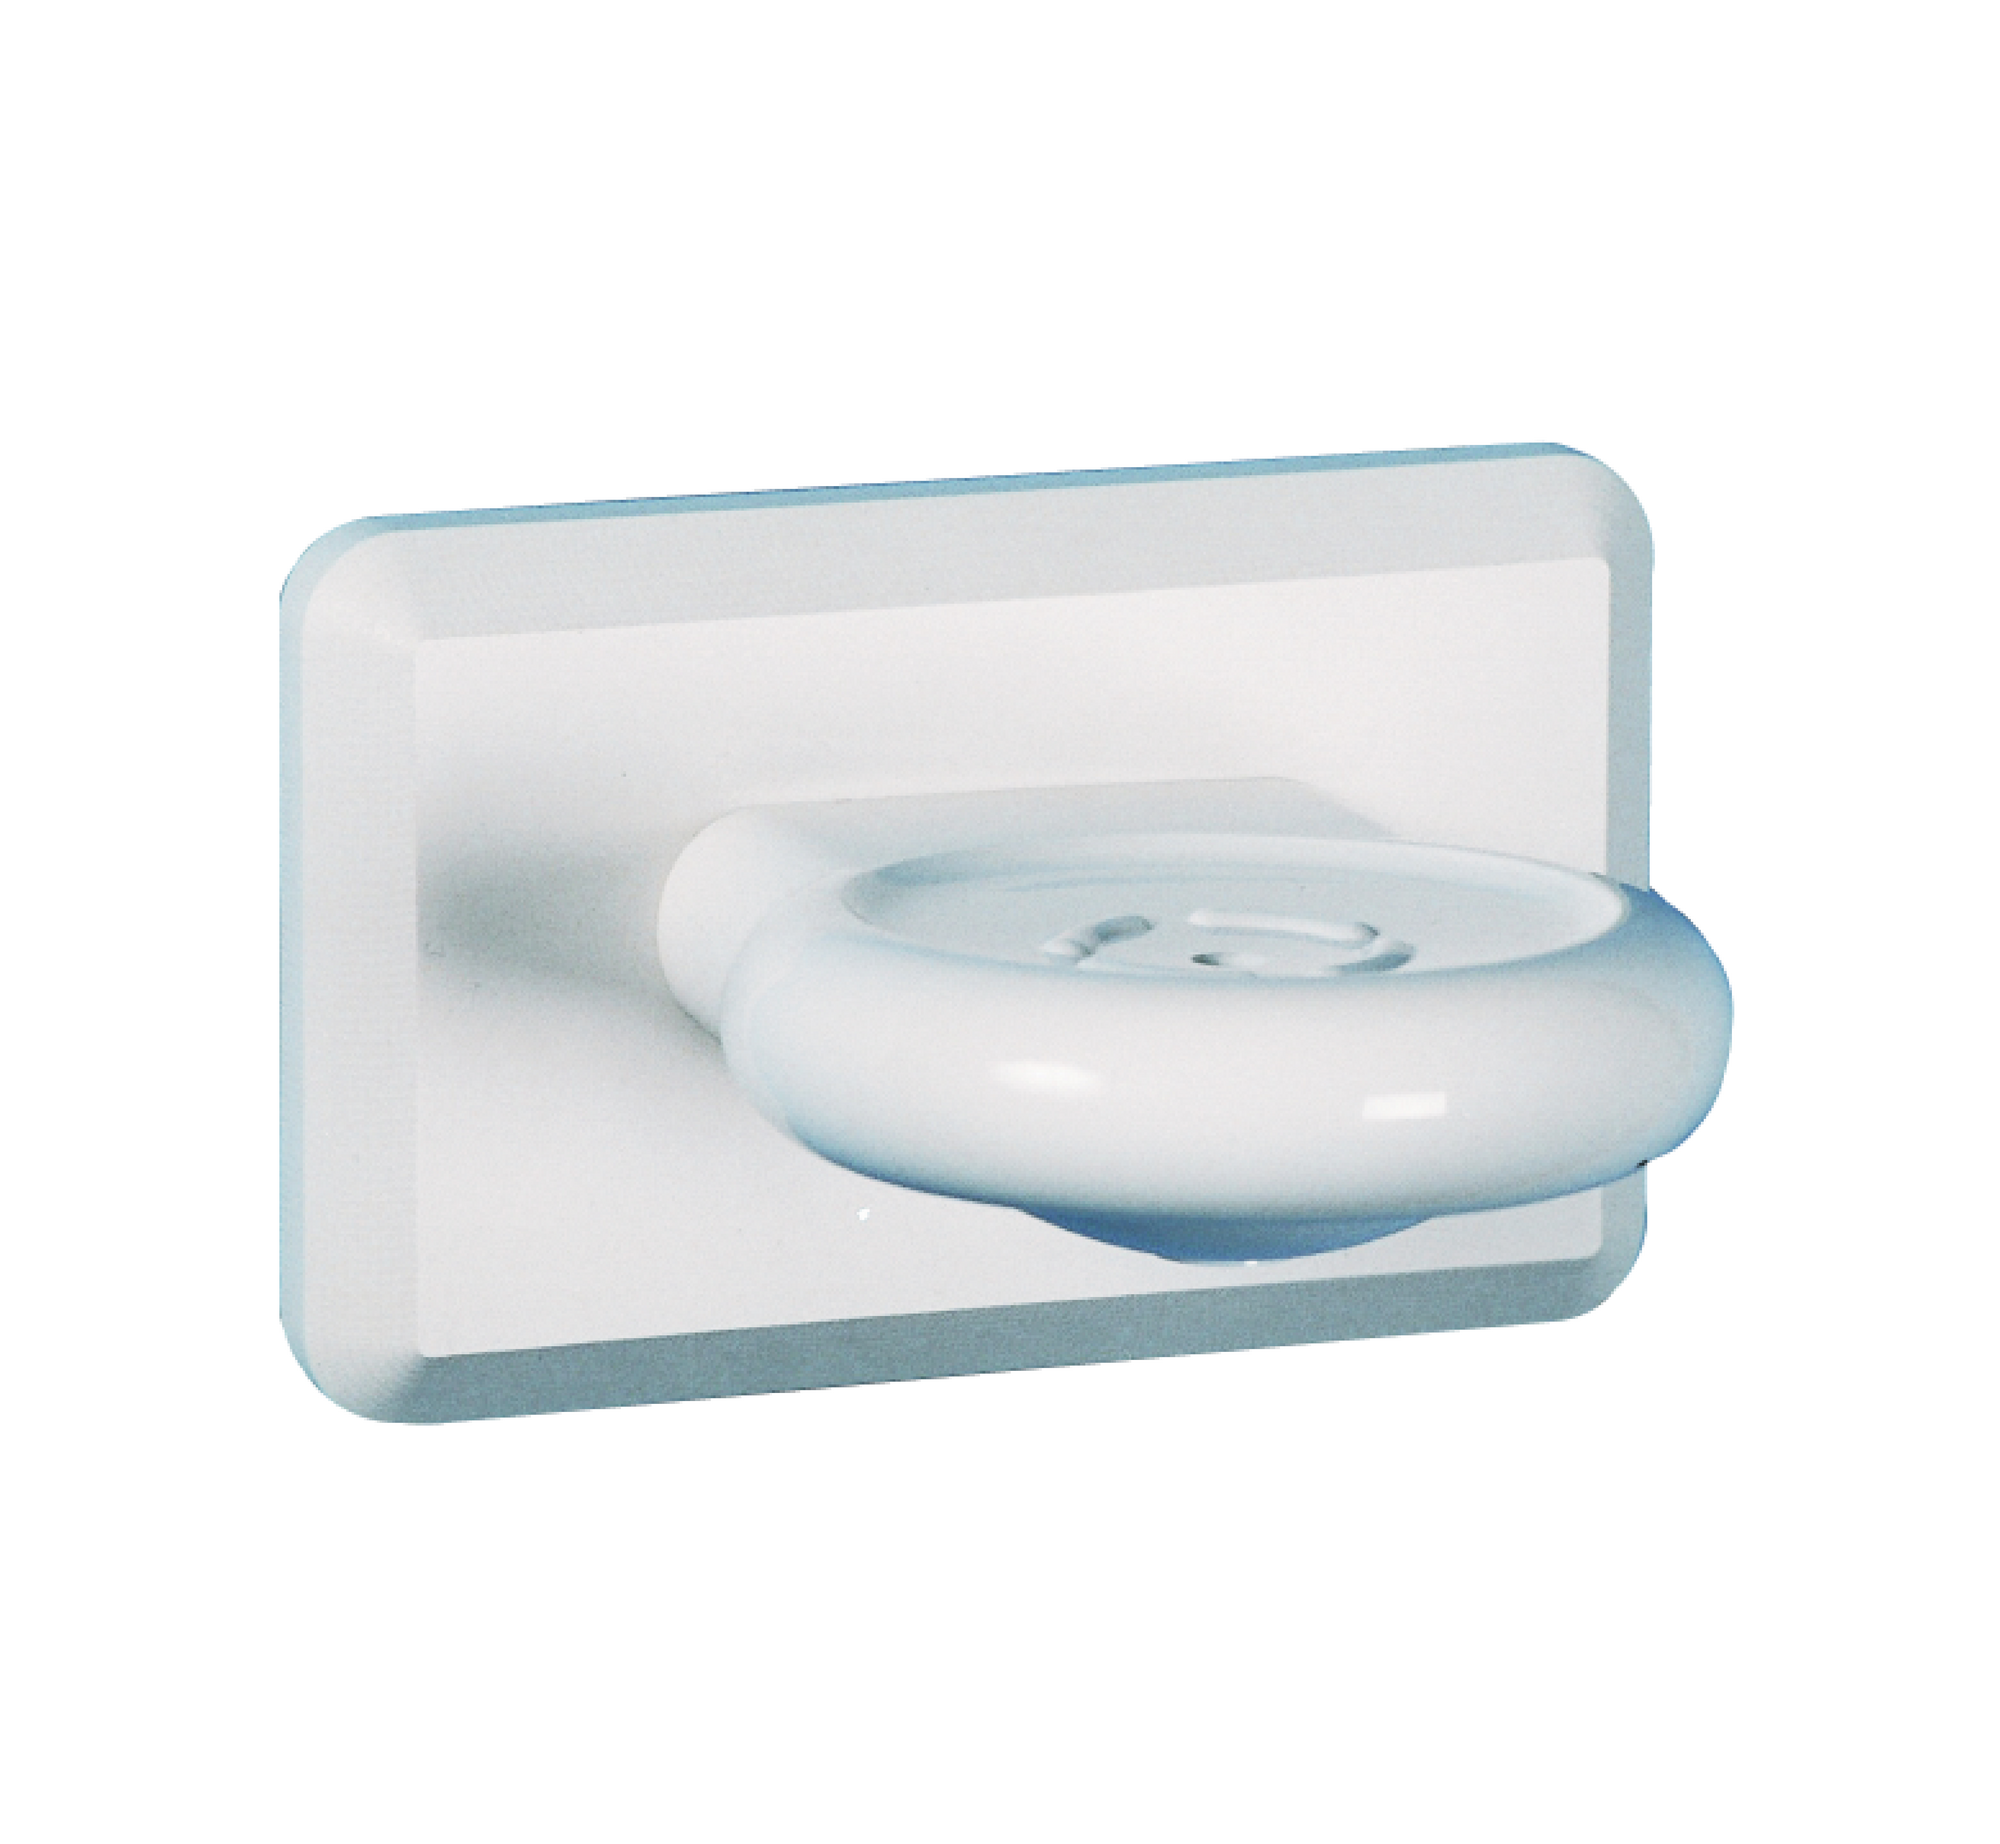 Kestrel Soap Dish - White Plastic